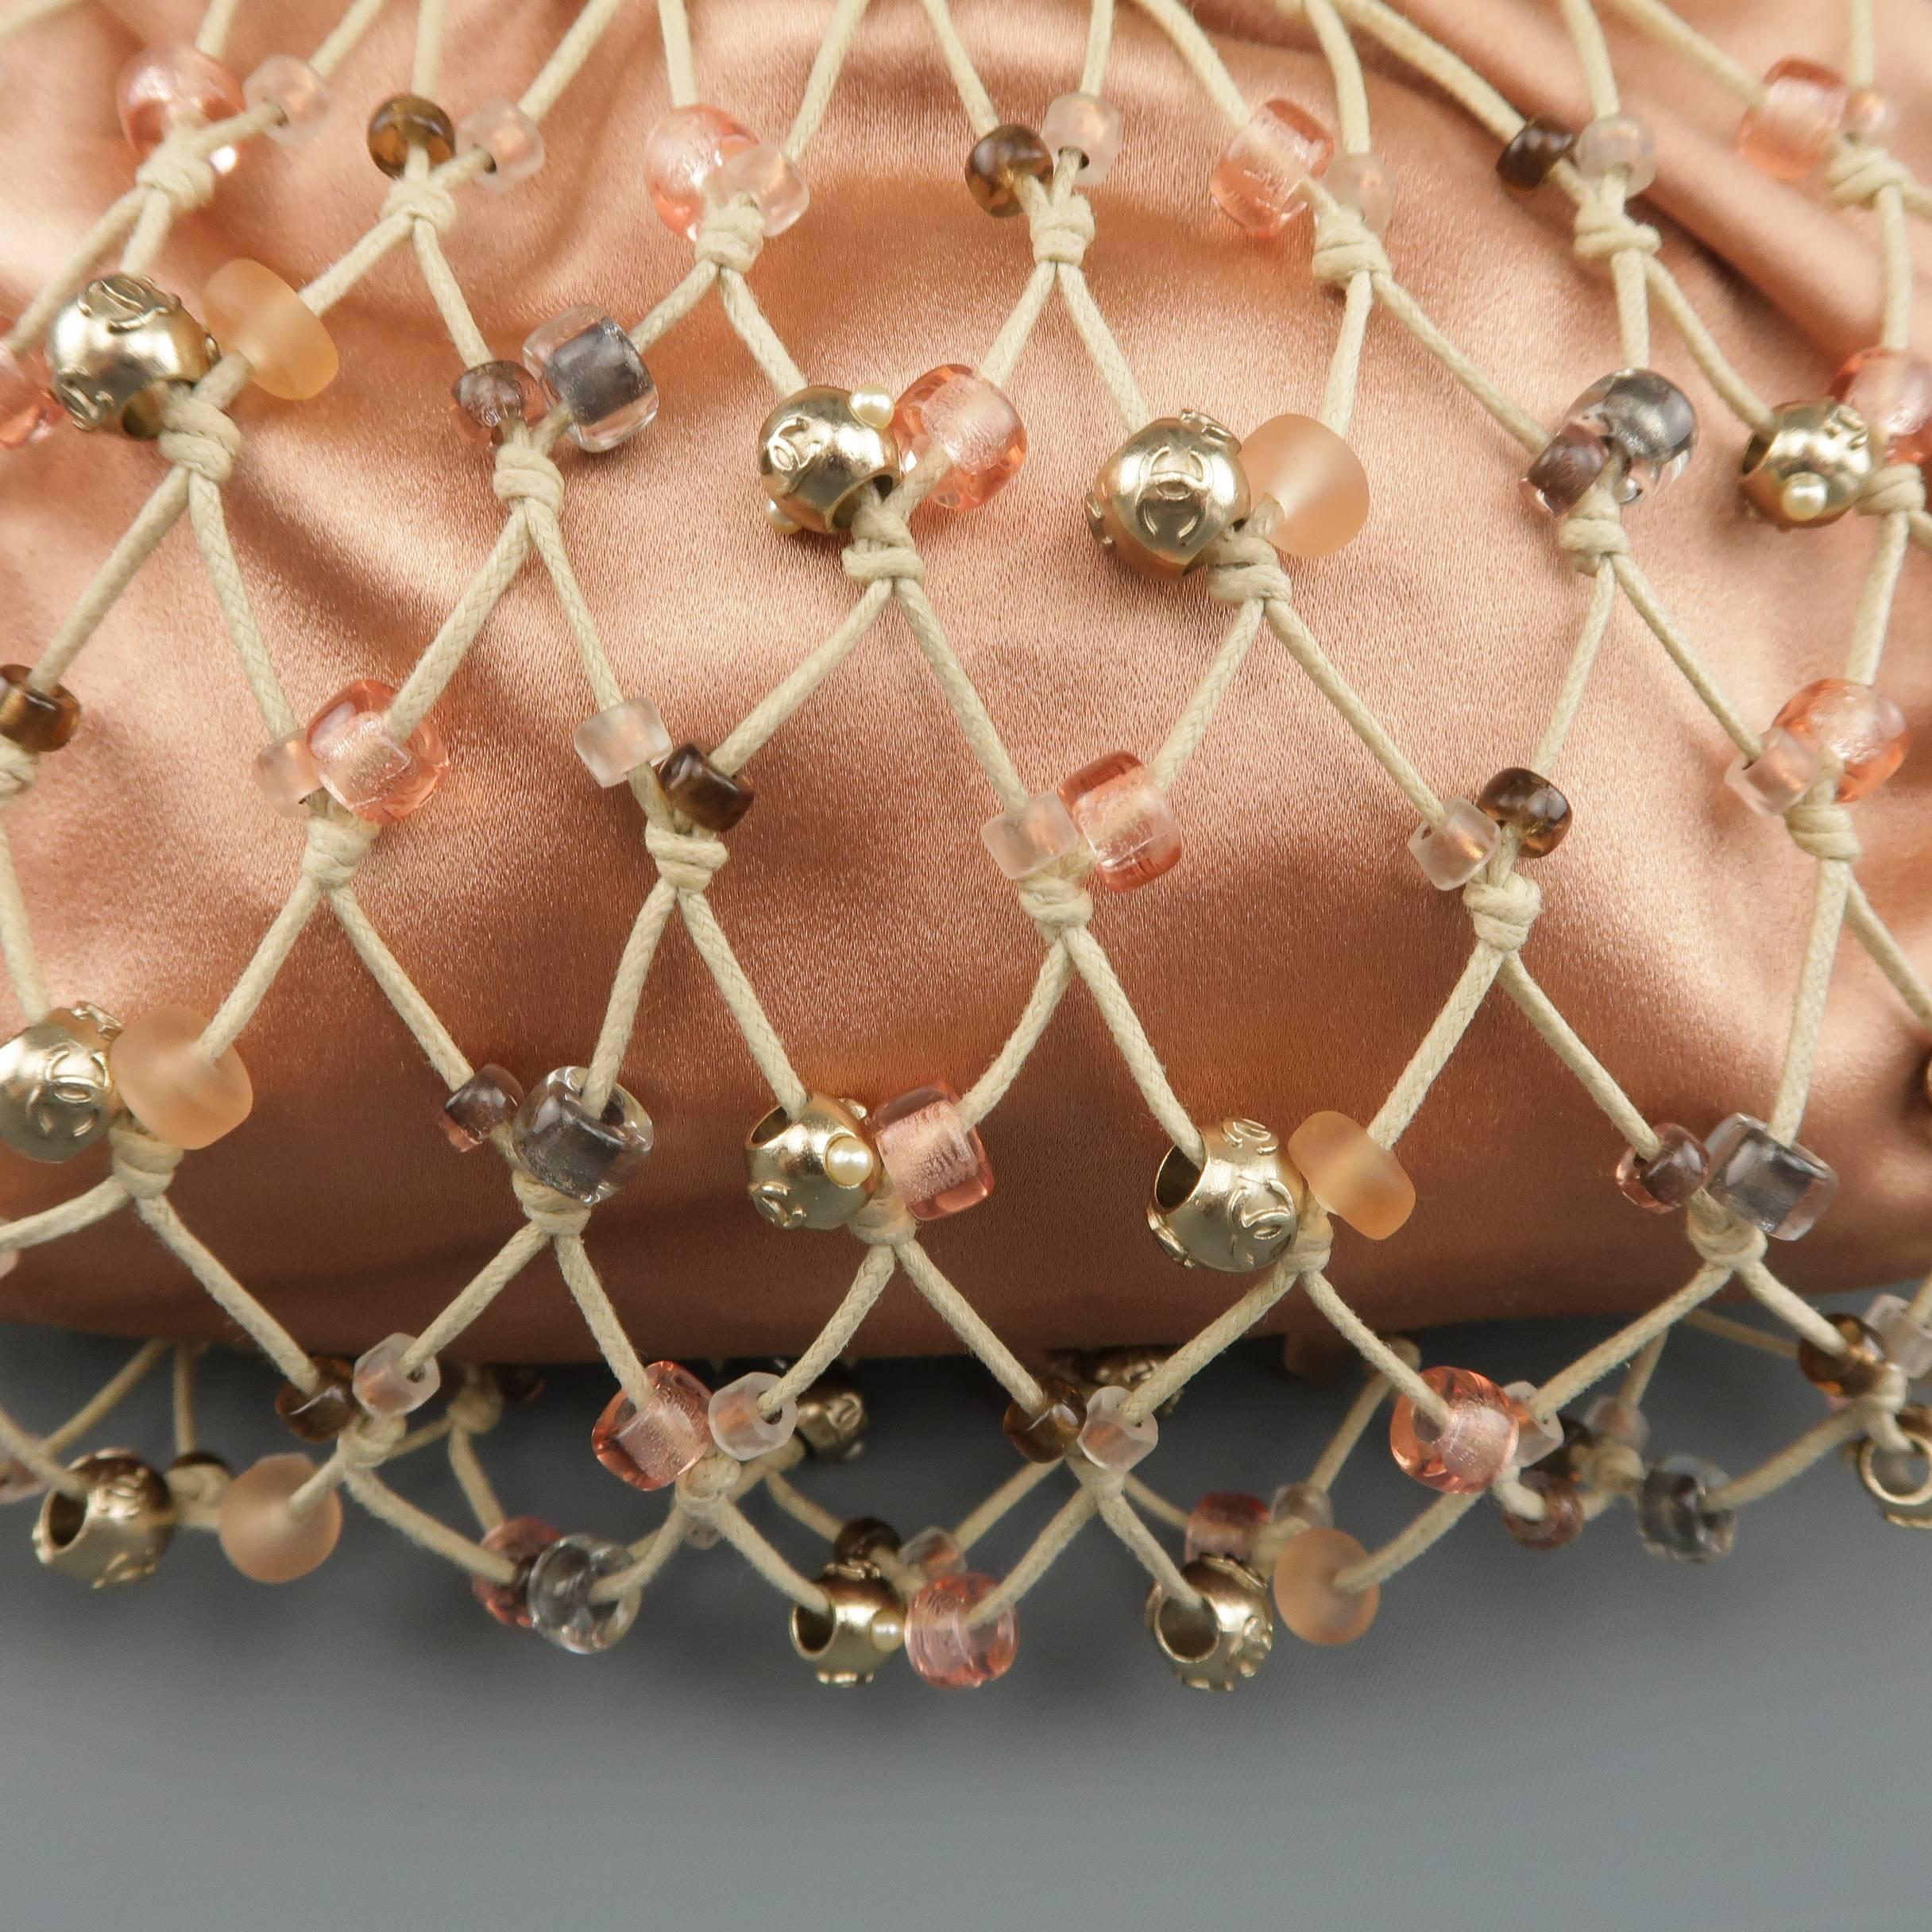 Seltene Chanel-Handtasche aus lachsrosafarbenem Seidensatin mit perlenbesetztem beigem Netzüberzug und einem dicken lederbezogenen Griff. Geringe Abnutzung am Griff und Flecken im Innenfutter. So wie es ist. Hergestellt in Frankreich. 

